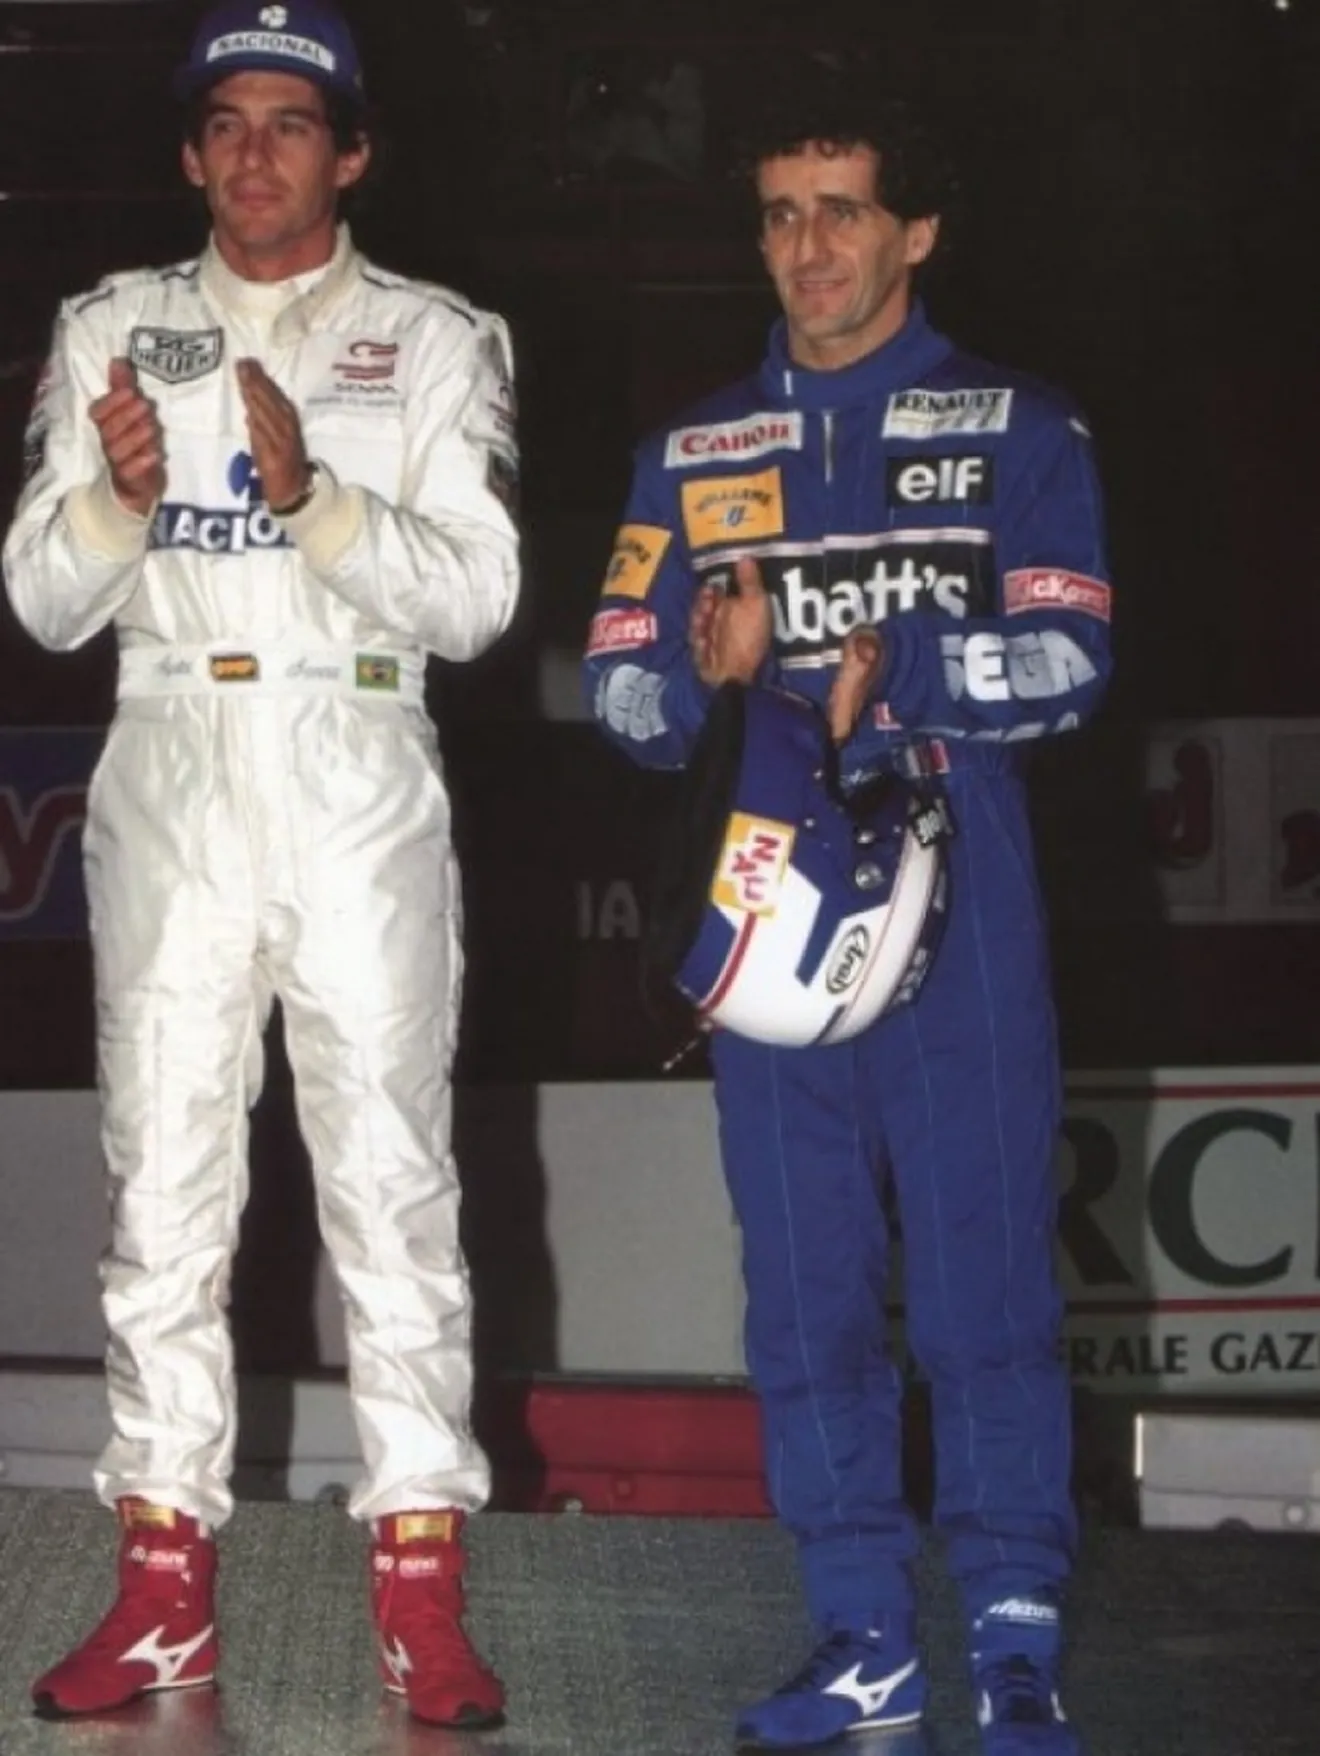 Un poco de historia: La entrevista de Prost hablando sobre Senna